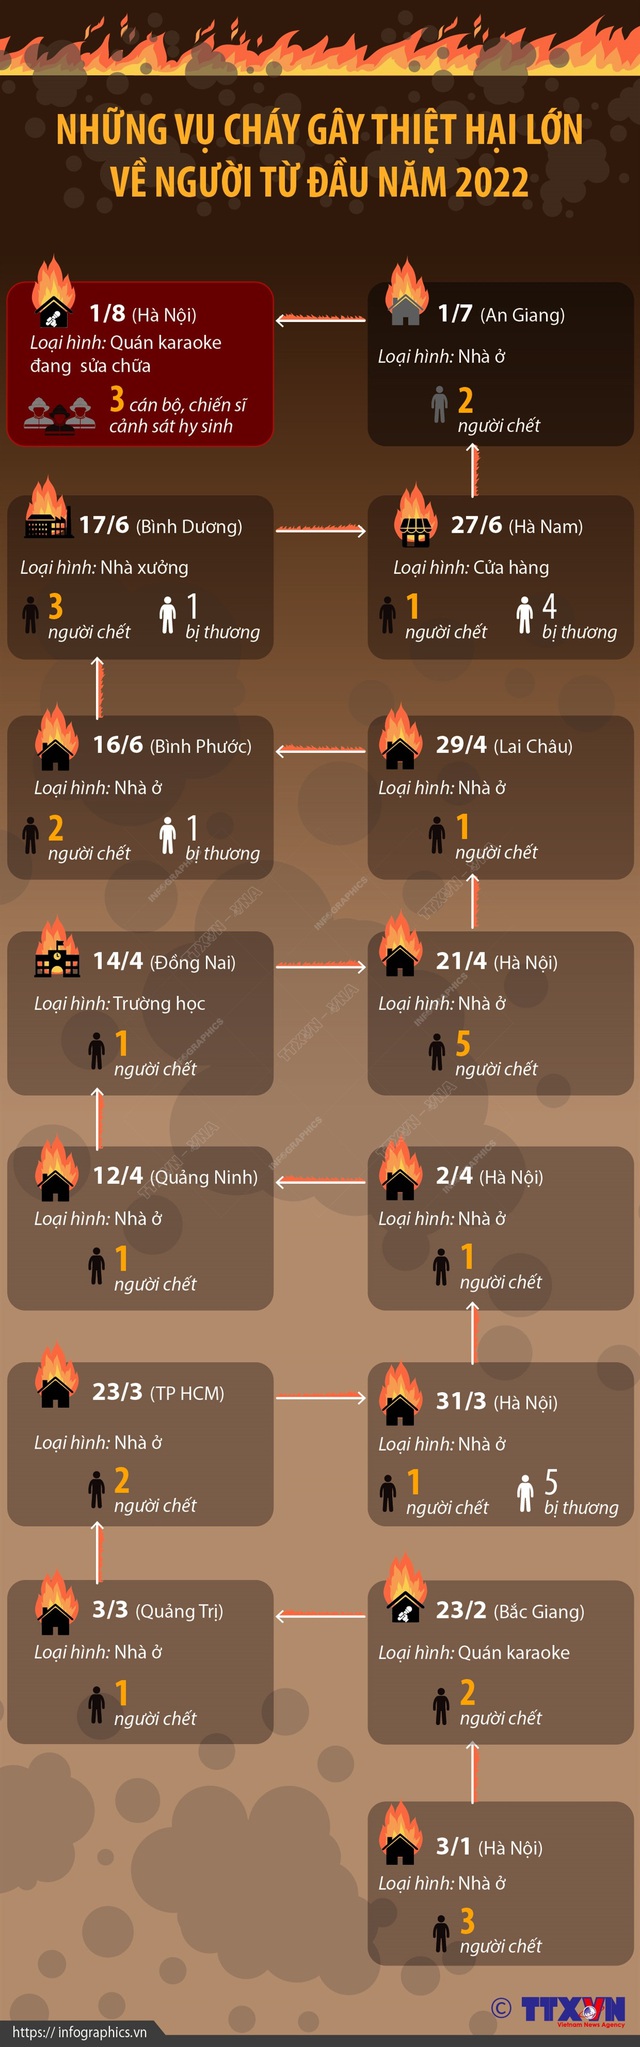 [Infographic] Những vụ cháy gây thiệt hại lớn về người từ đầu năm 2022 - Ảnh 1.